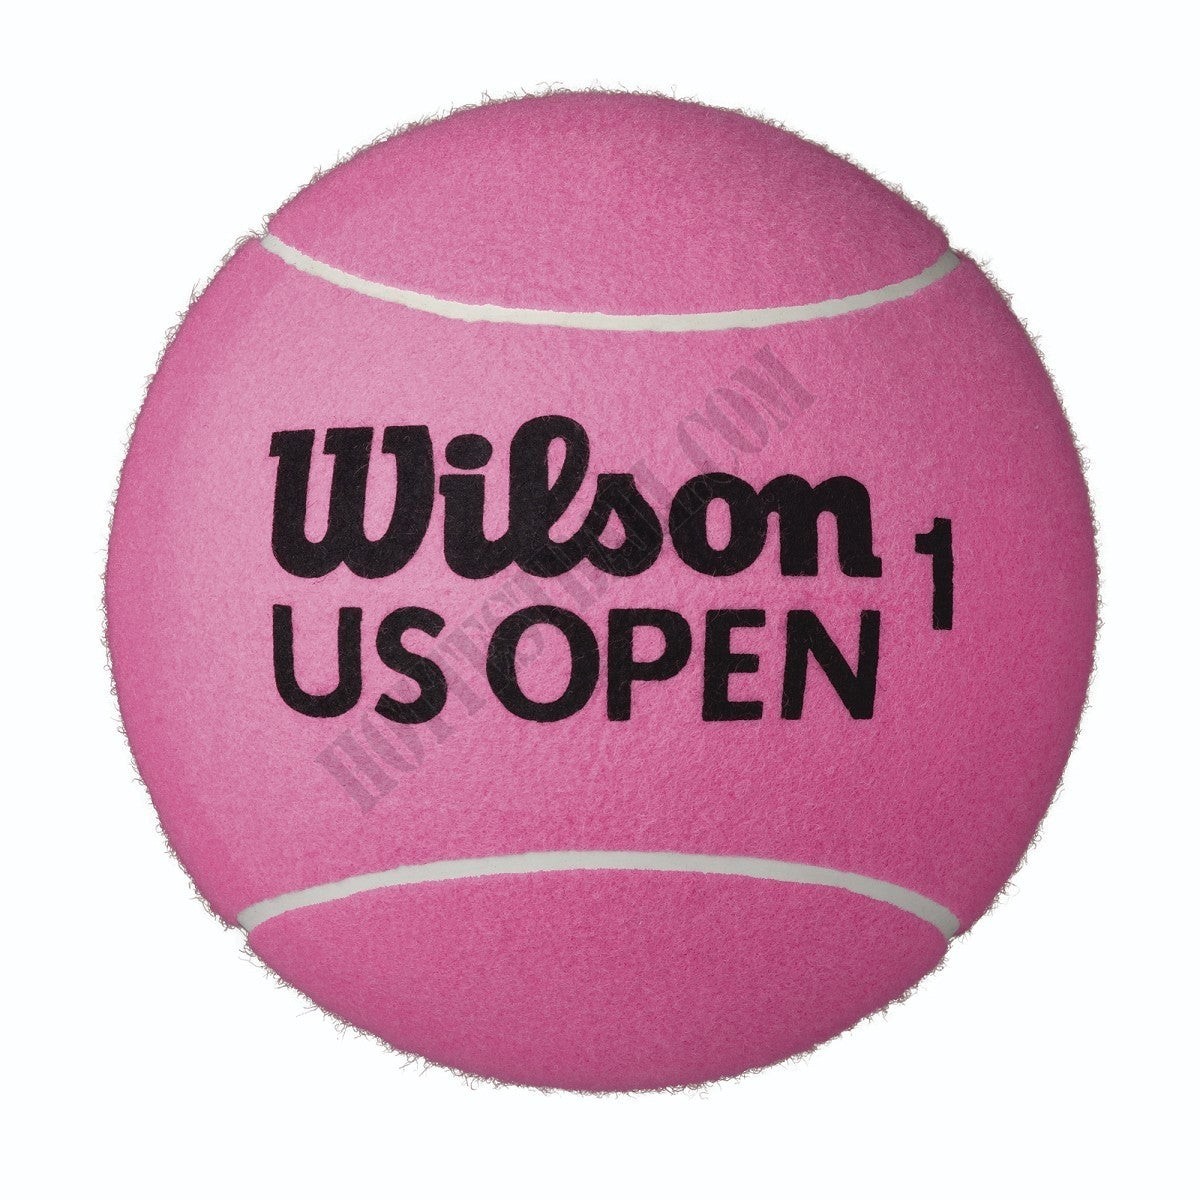 US Open Jumbo Pink 9" Tennis Ball - Wilson Discount Store - US Open Jumbo Pink 9" Tennis Ball - Wilson Discount Store